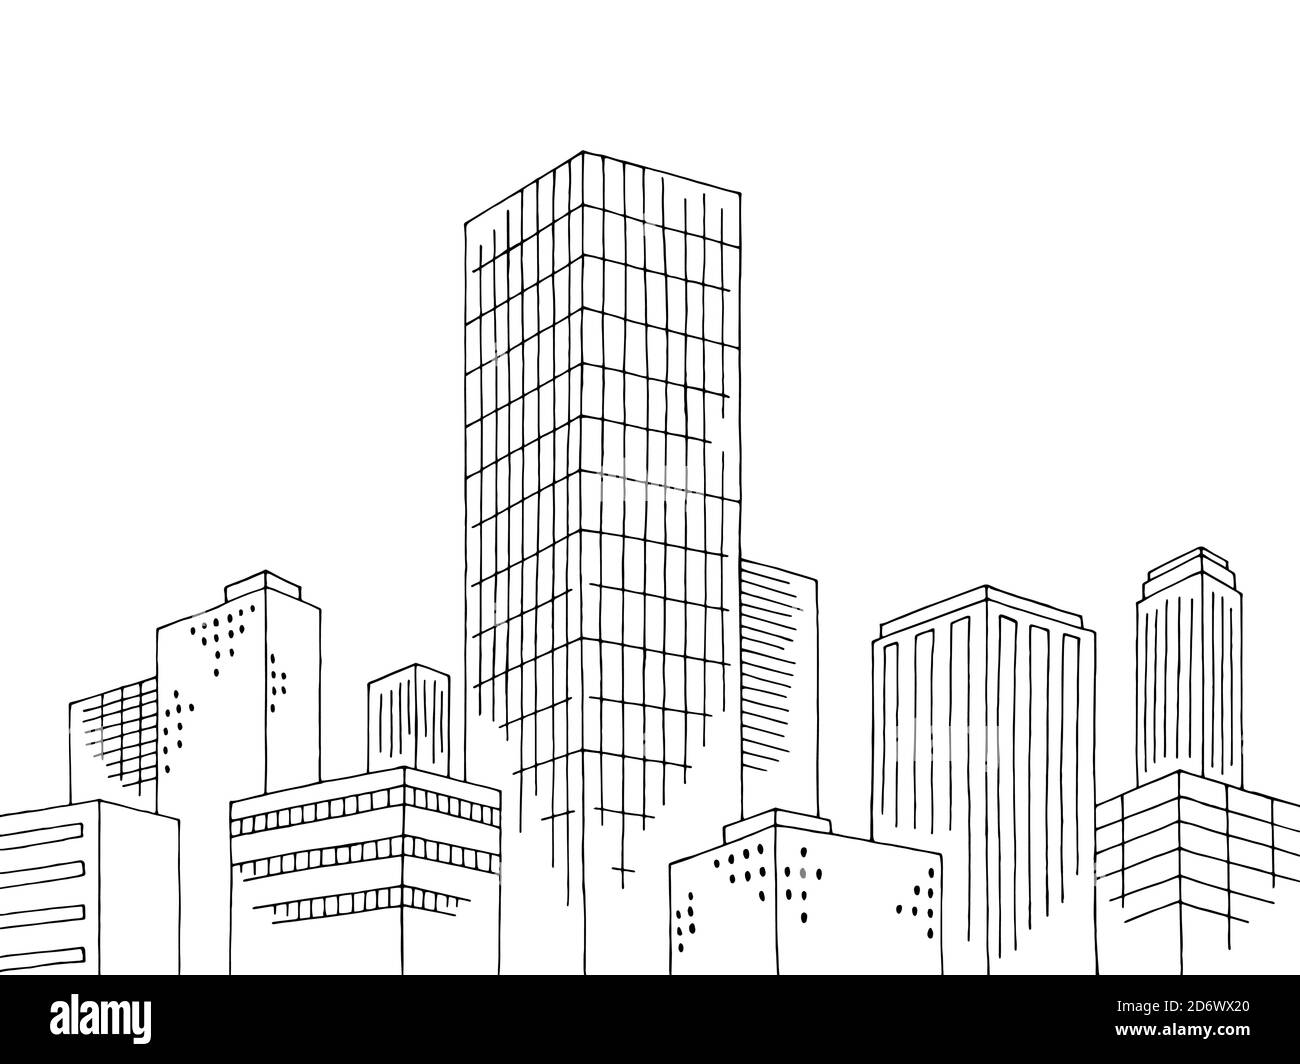 Höchster Wolkenkratzer Tower Gebäude außen in der Stadt Grafik schwarz Vektor der weißen Skizzendarstellung Stock Vektor